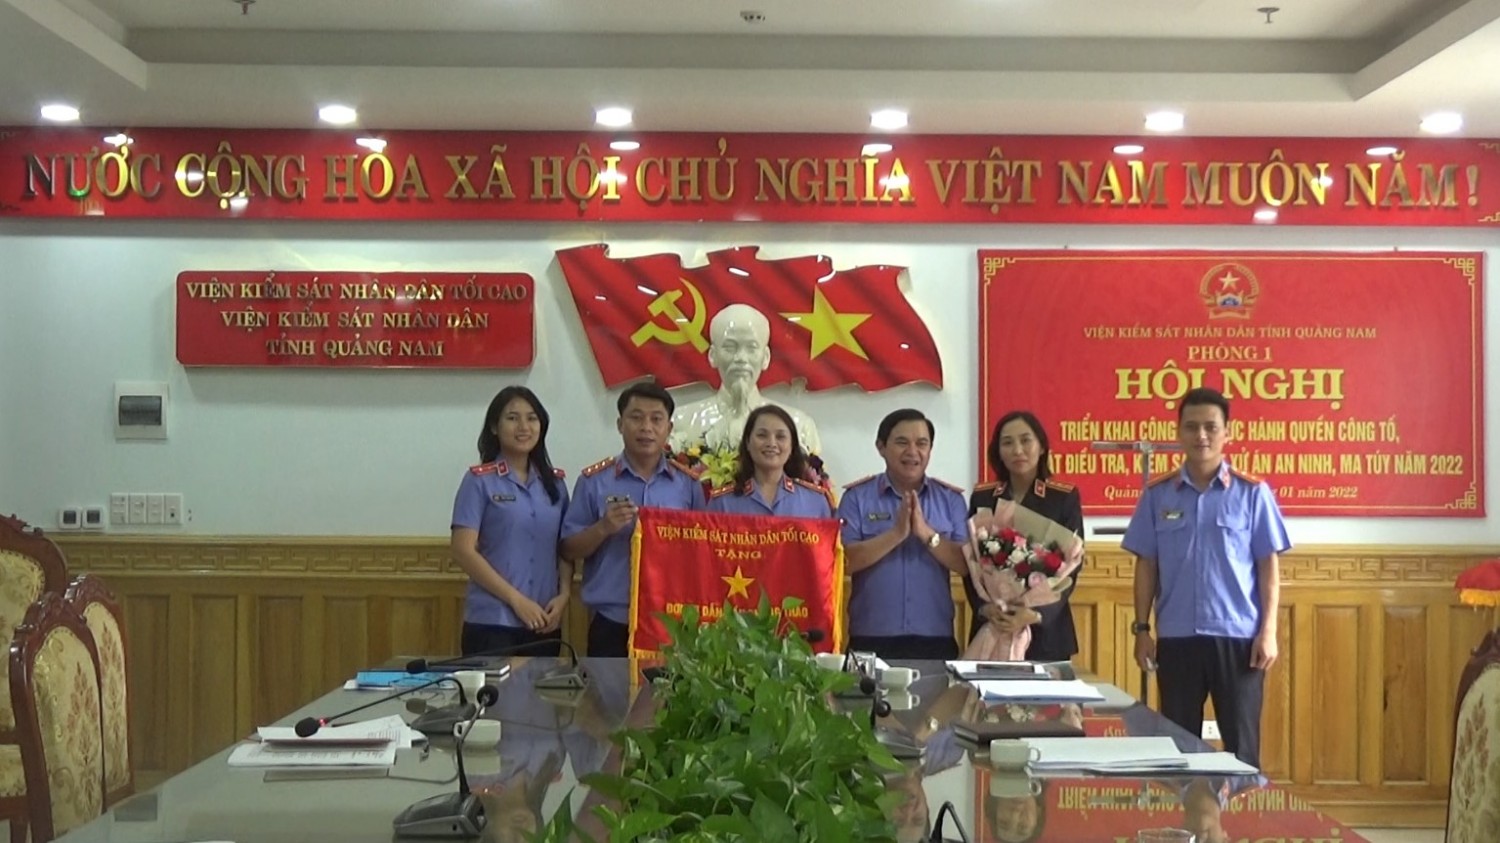 Phòng 1 VKSND tỉnh Quảng Nam tổ chức Hội nghị triển khai công tác năm 2022, đón nhận Cờ thi đua dẫn đầu Khối của VKSND tối cao